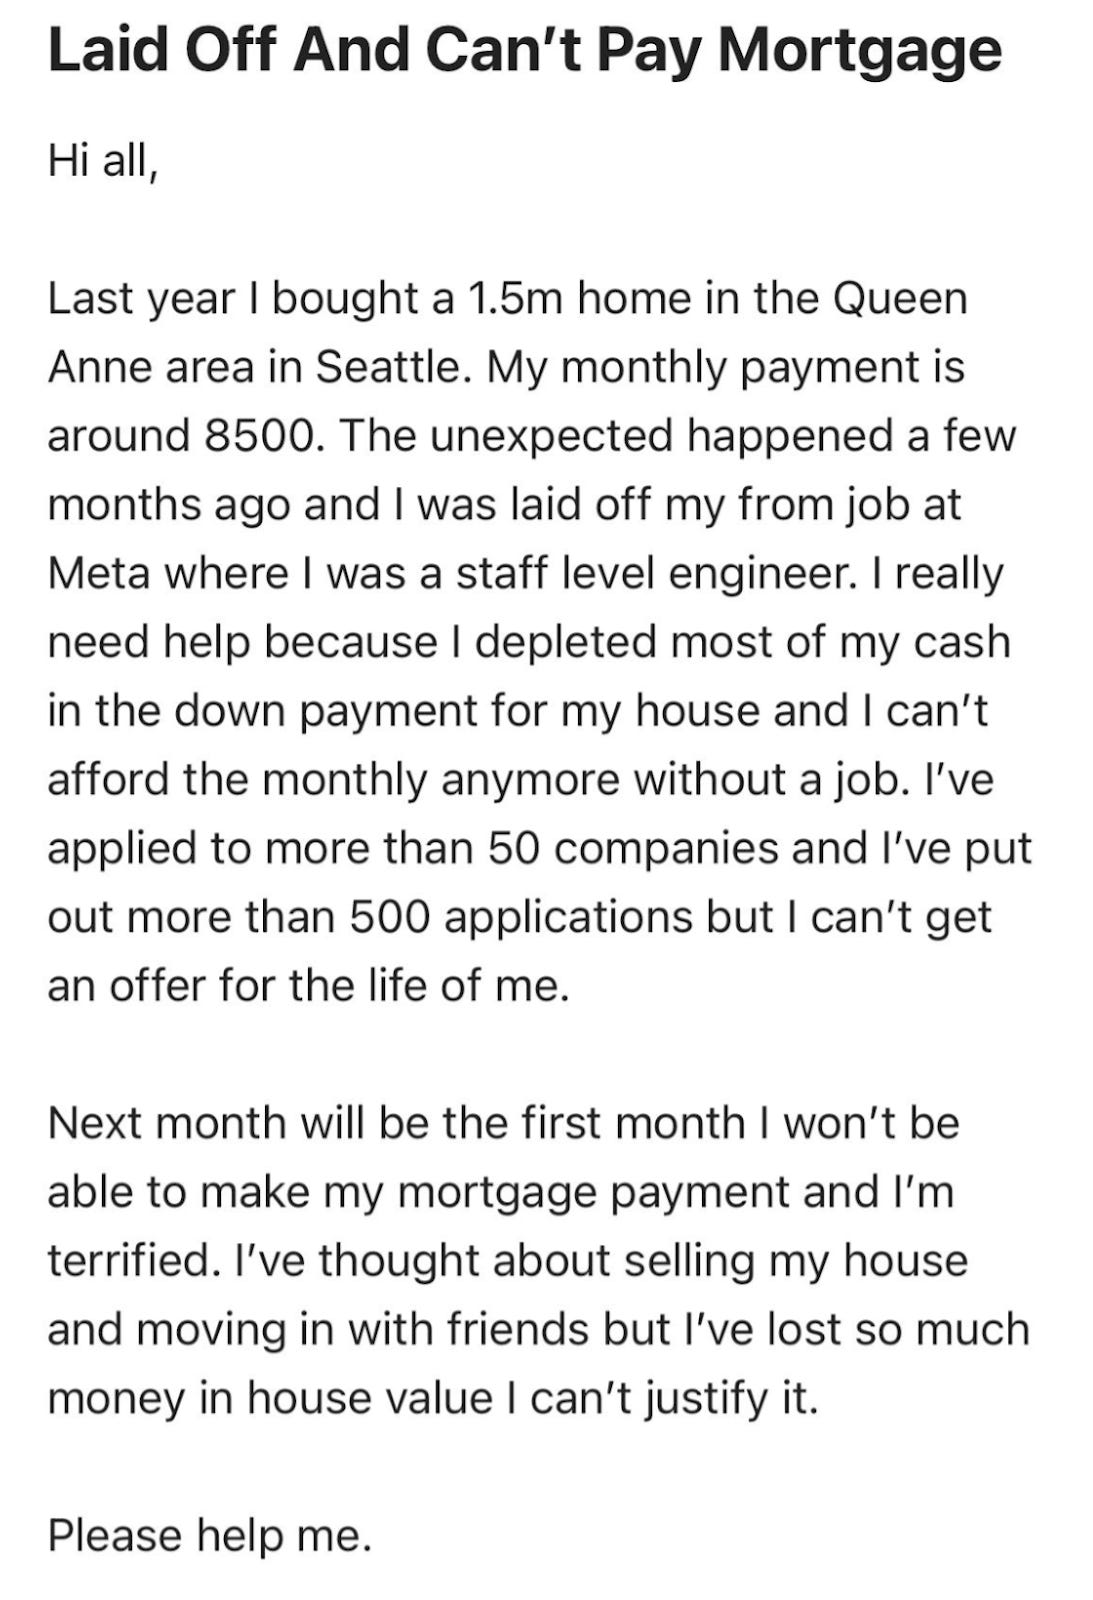 Relato de un ingeniero de software que se compró una casa de 1.5M y no puede pagarla